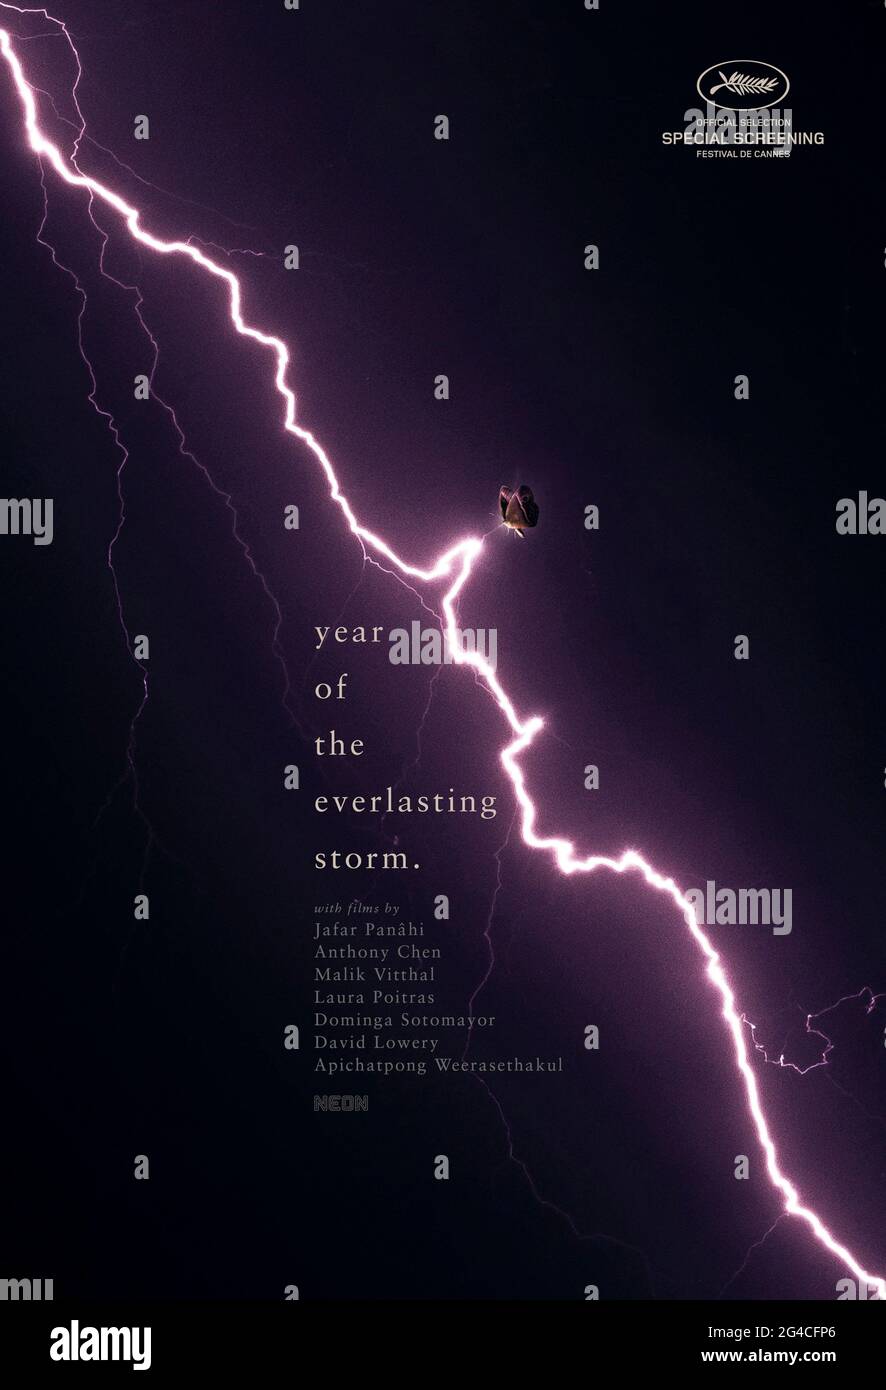 The Year of the Everlasting Storm (2021) unter der Regie von Jafar Panahi, Anthony Chen, Malik Vitthal, Laura Poitras, Dominga Sotomayor, David Lowery und Apichatpong Weerasethakul. Eine Anthologie von 7 Geschichten, die während der COVID-19-Pandemie aufgesetzt wurden. Stockfoto